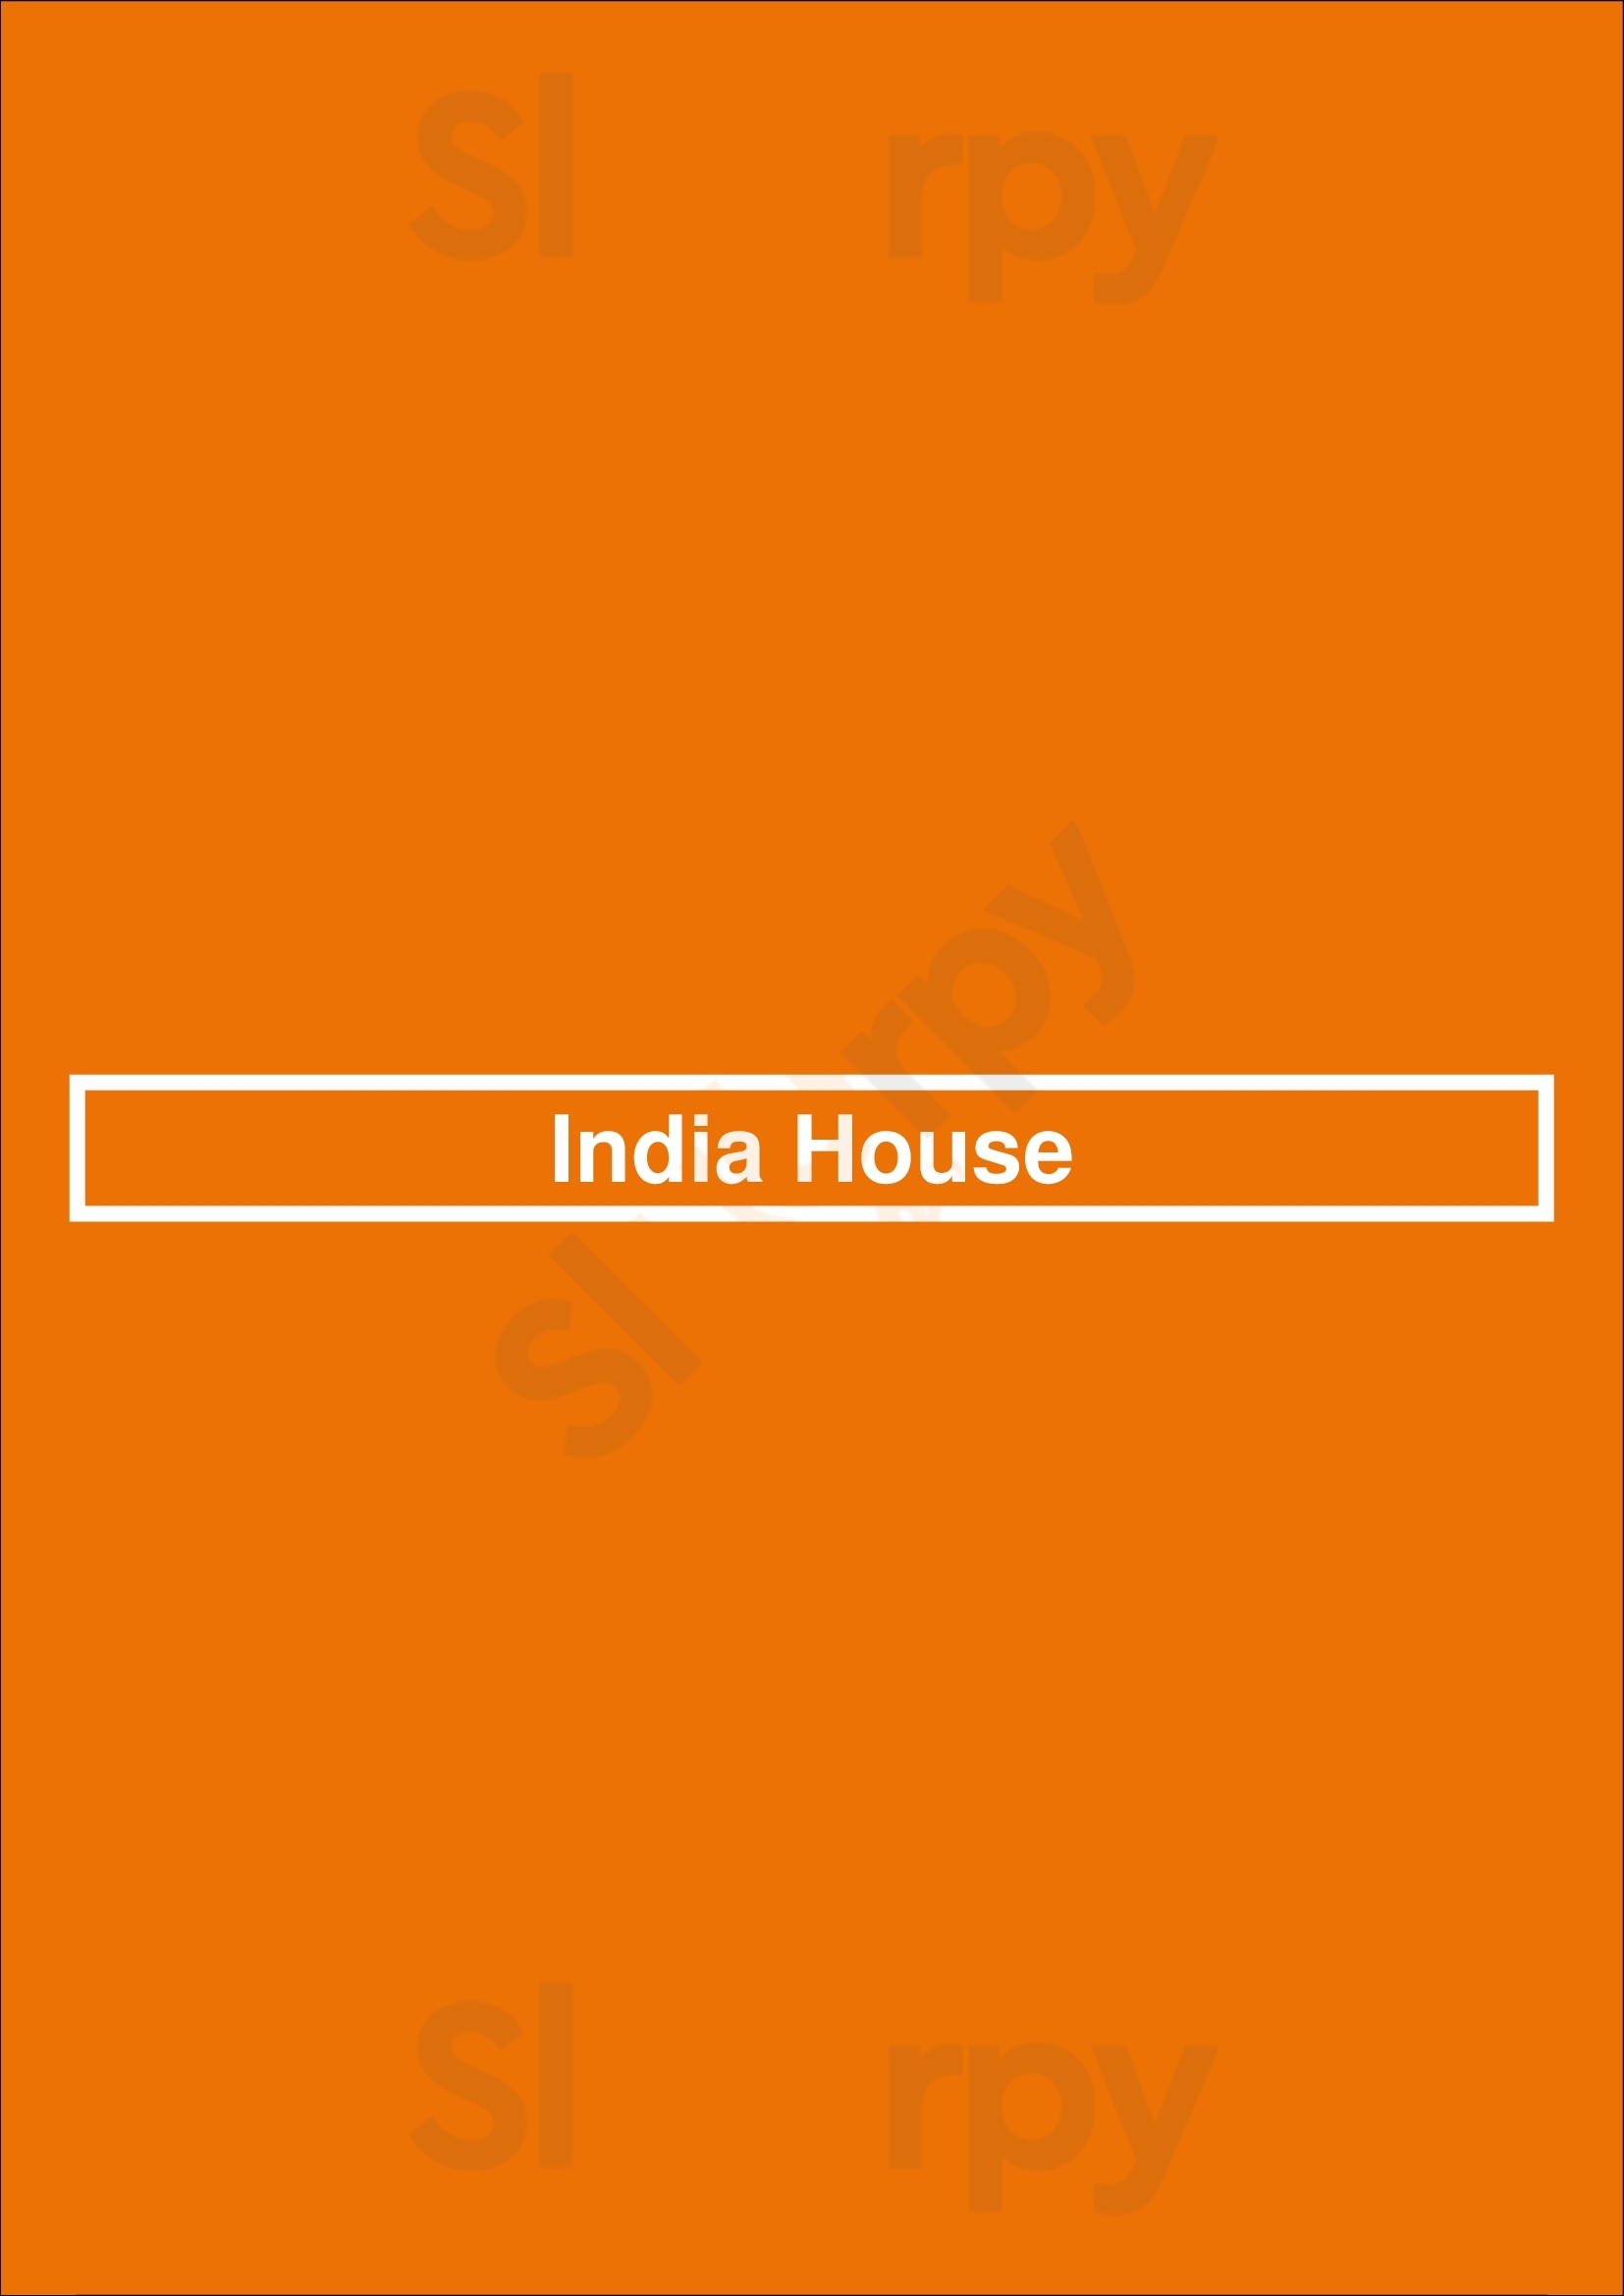 India House Cardiff Menu - 1